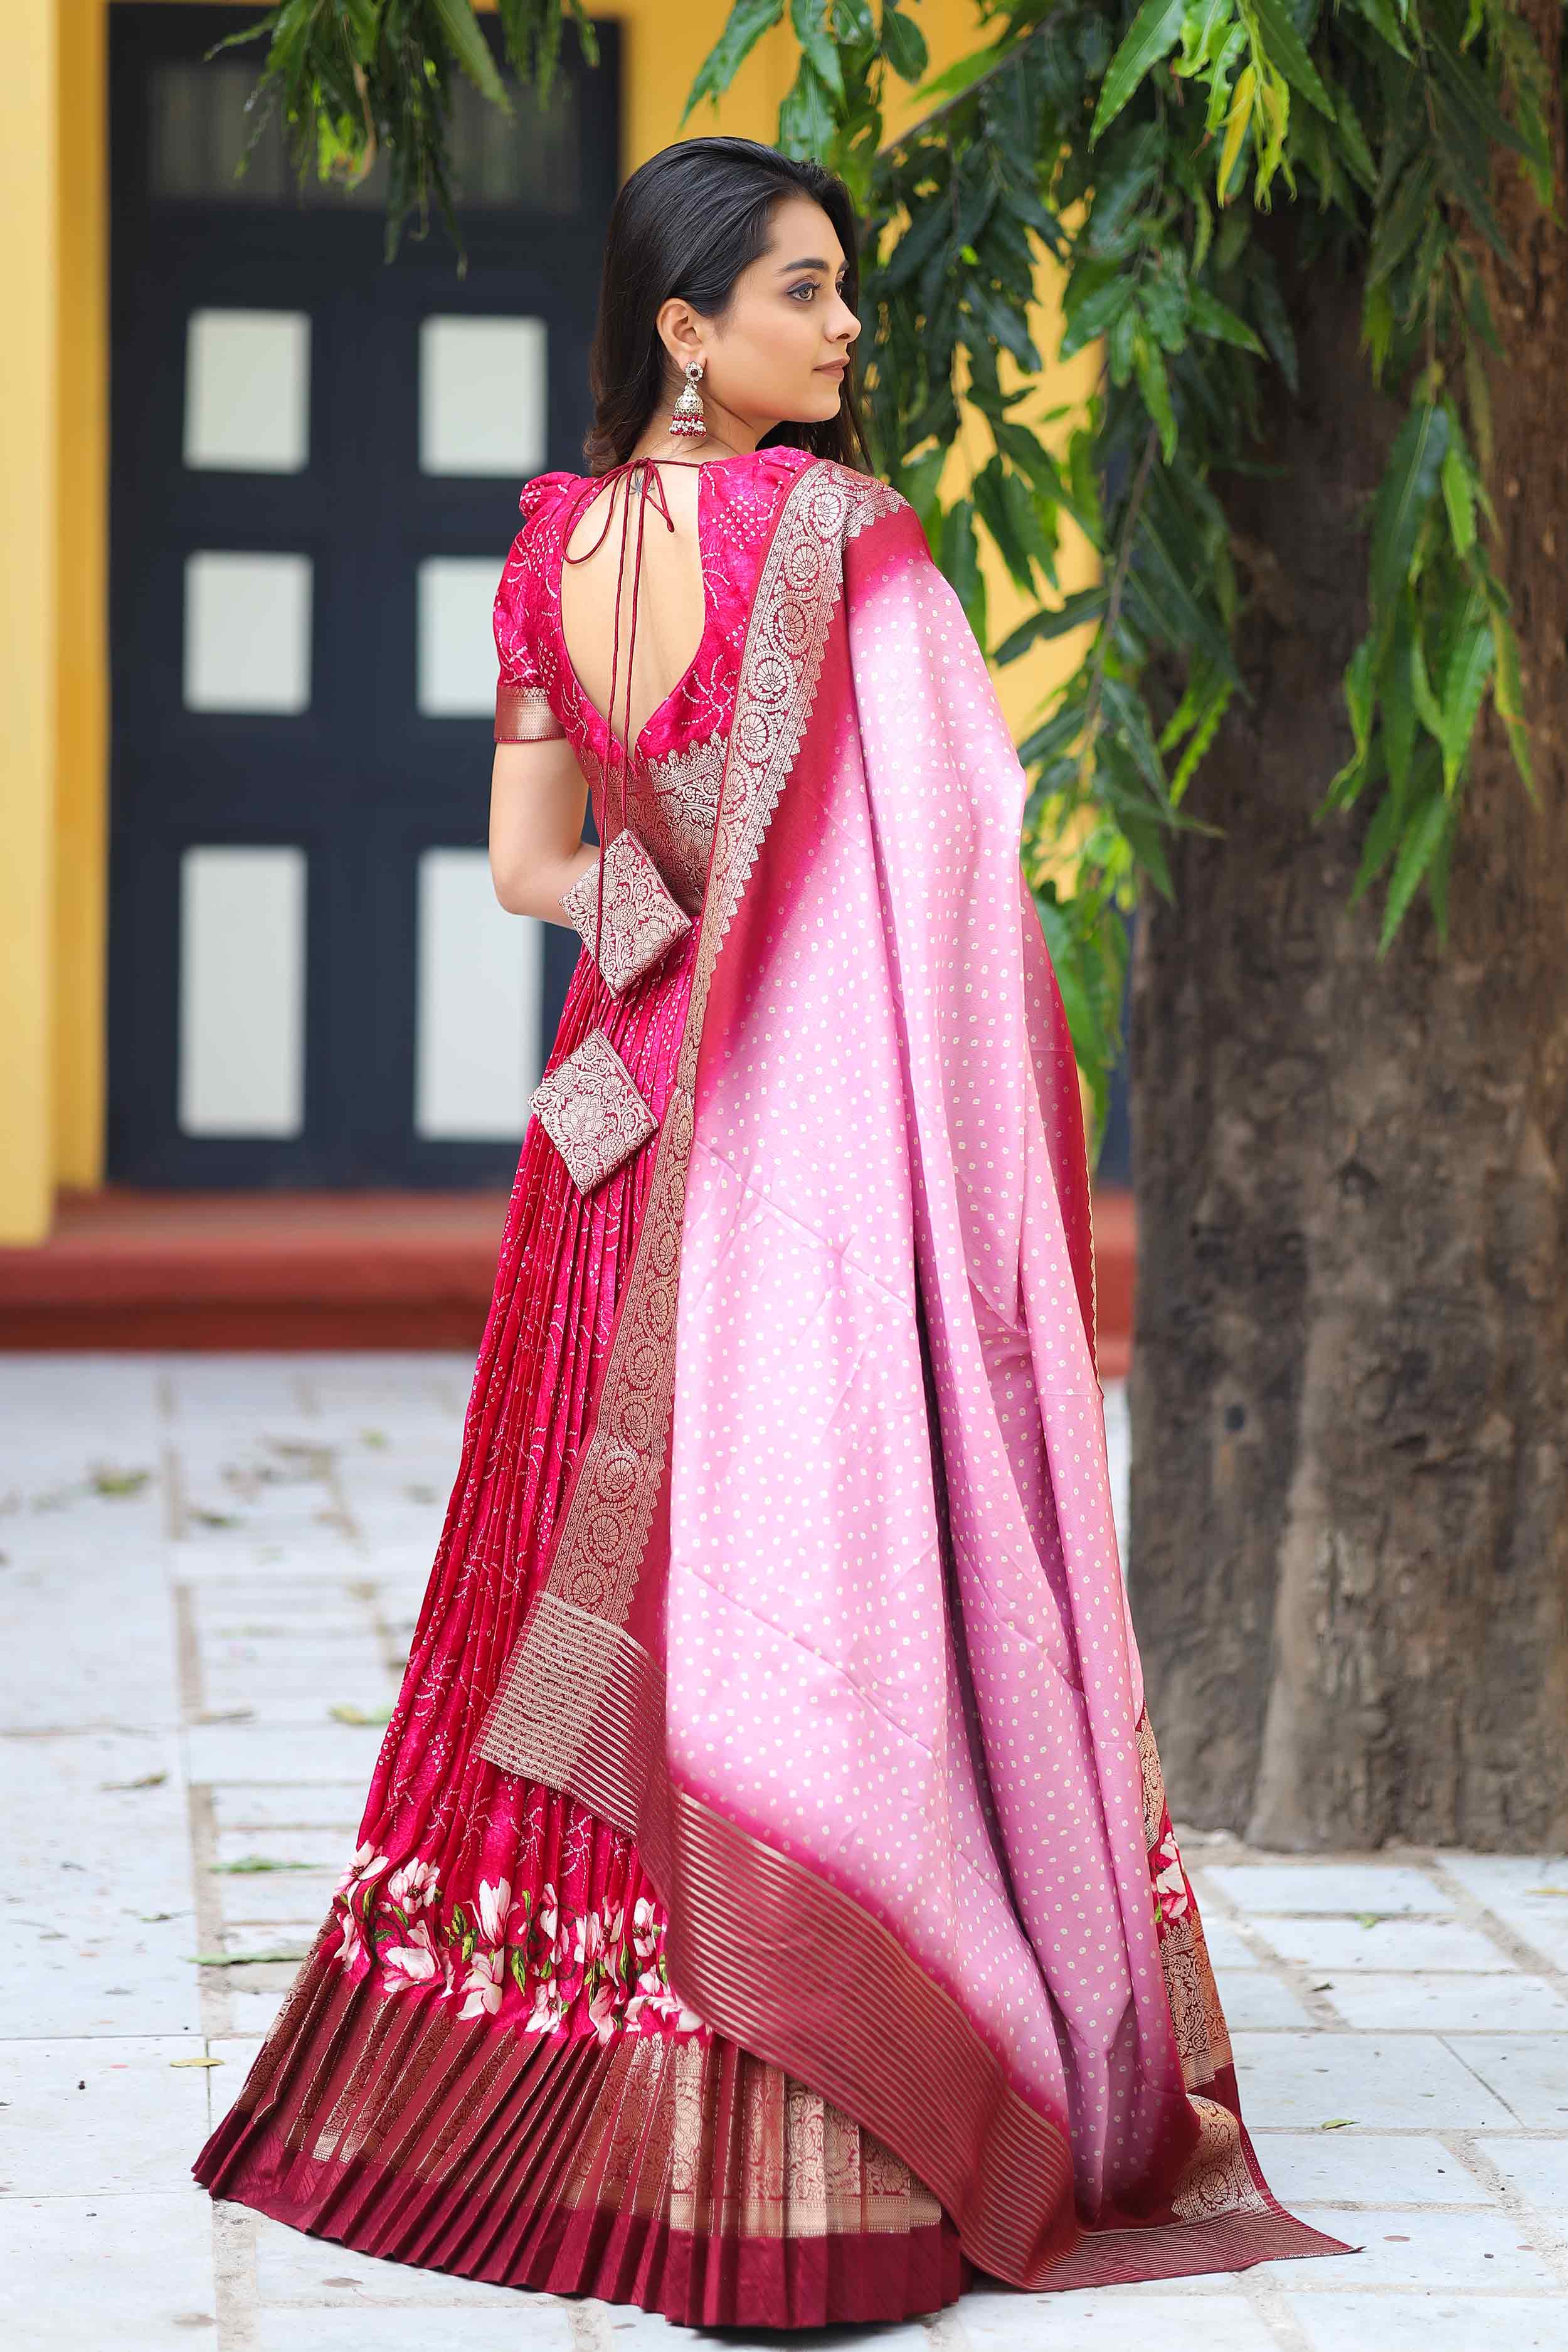 a woman in pink Bandhej Anarkali Dress